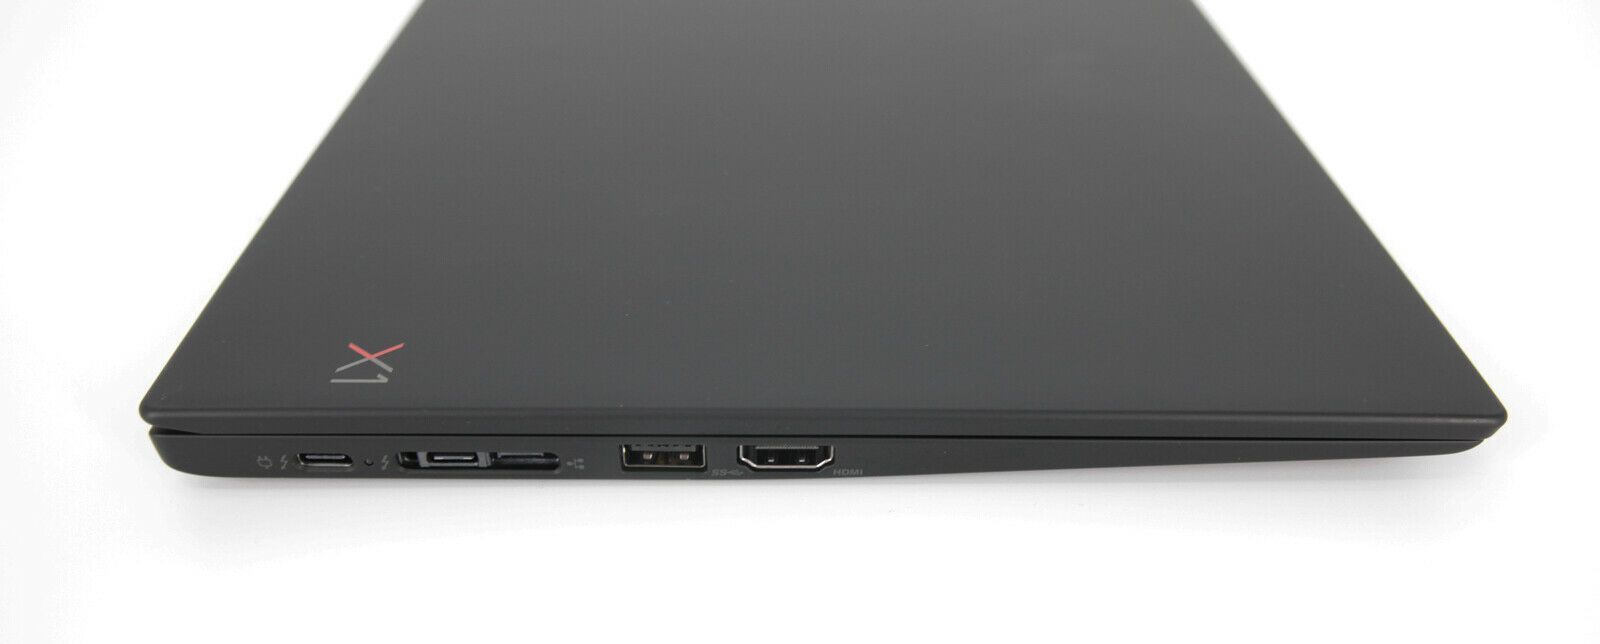 Lenovo Thinkpad X1 Carbon 6th Gen WQHD: Core i5-8350U, 256GB, 16GB RAM, Warranty - CruiseTech